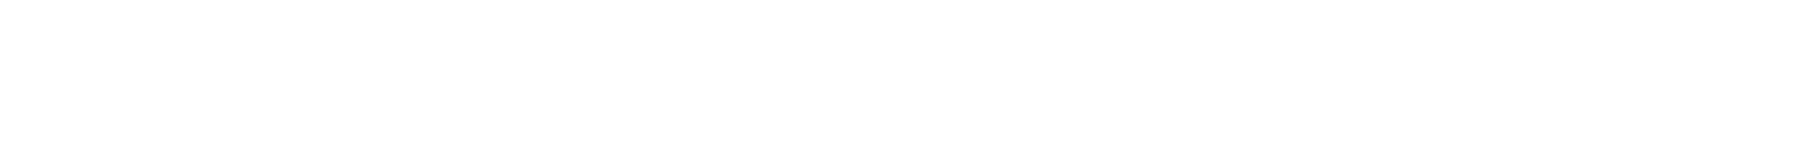 第34回ハンセン病コ・メディカル学術集会